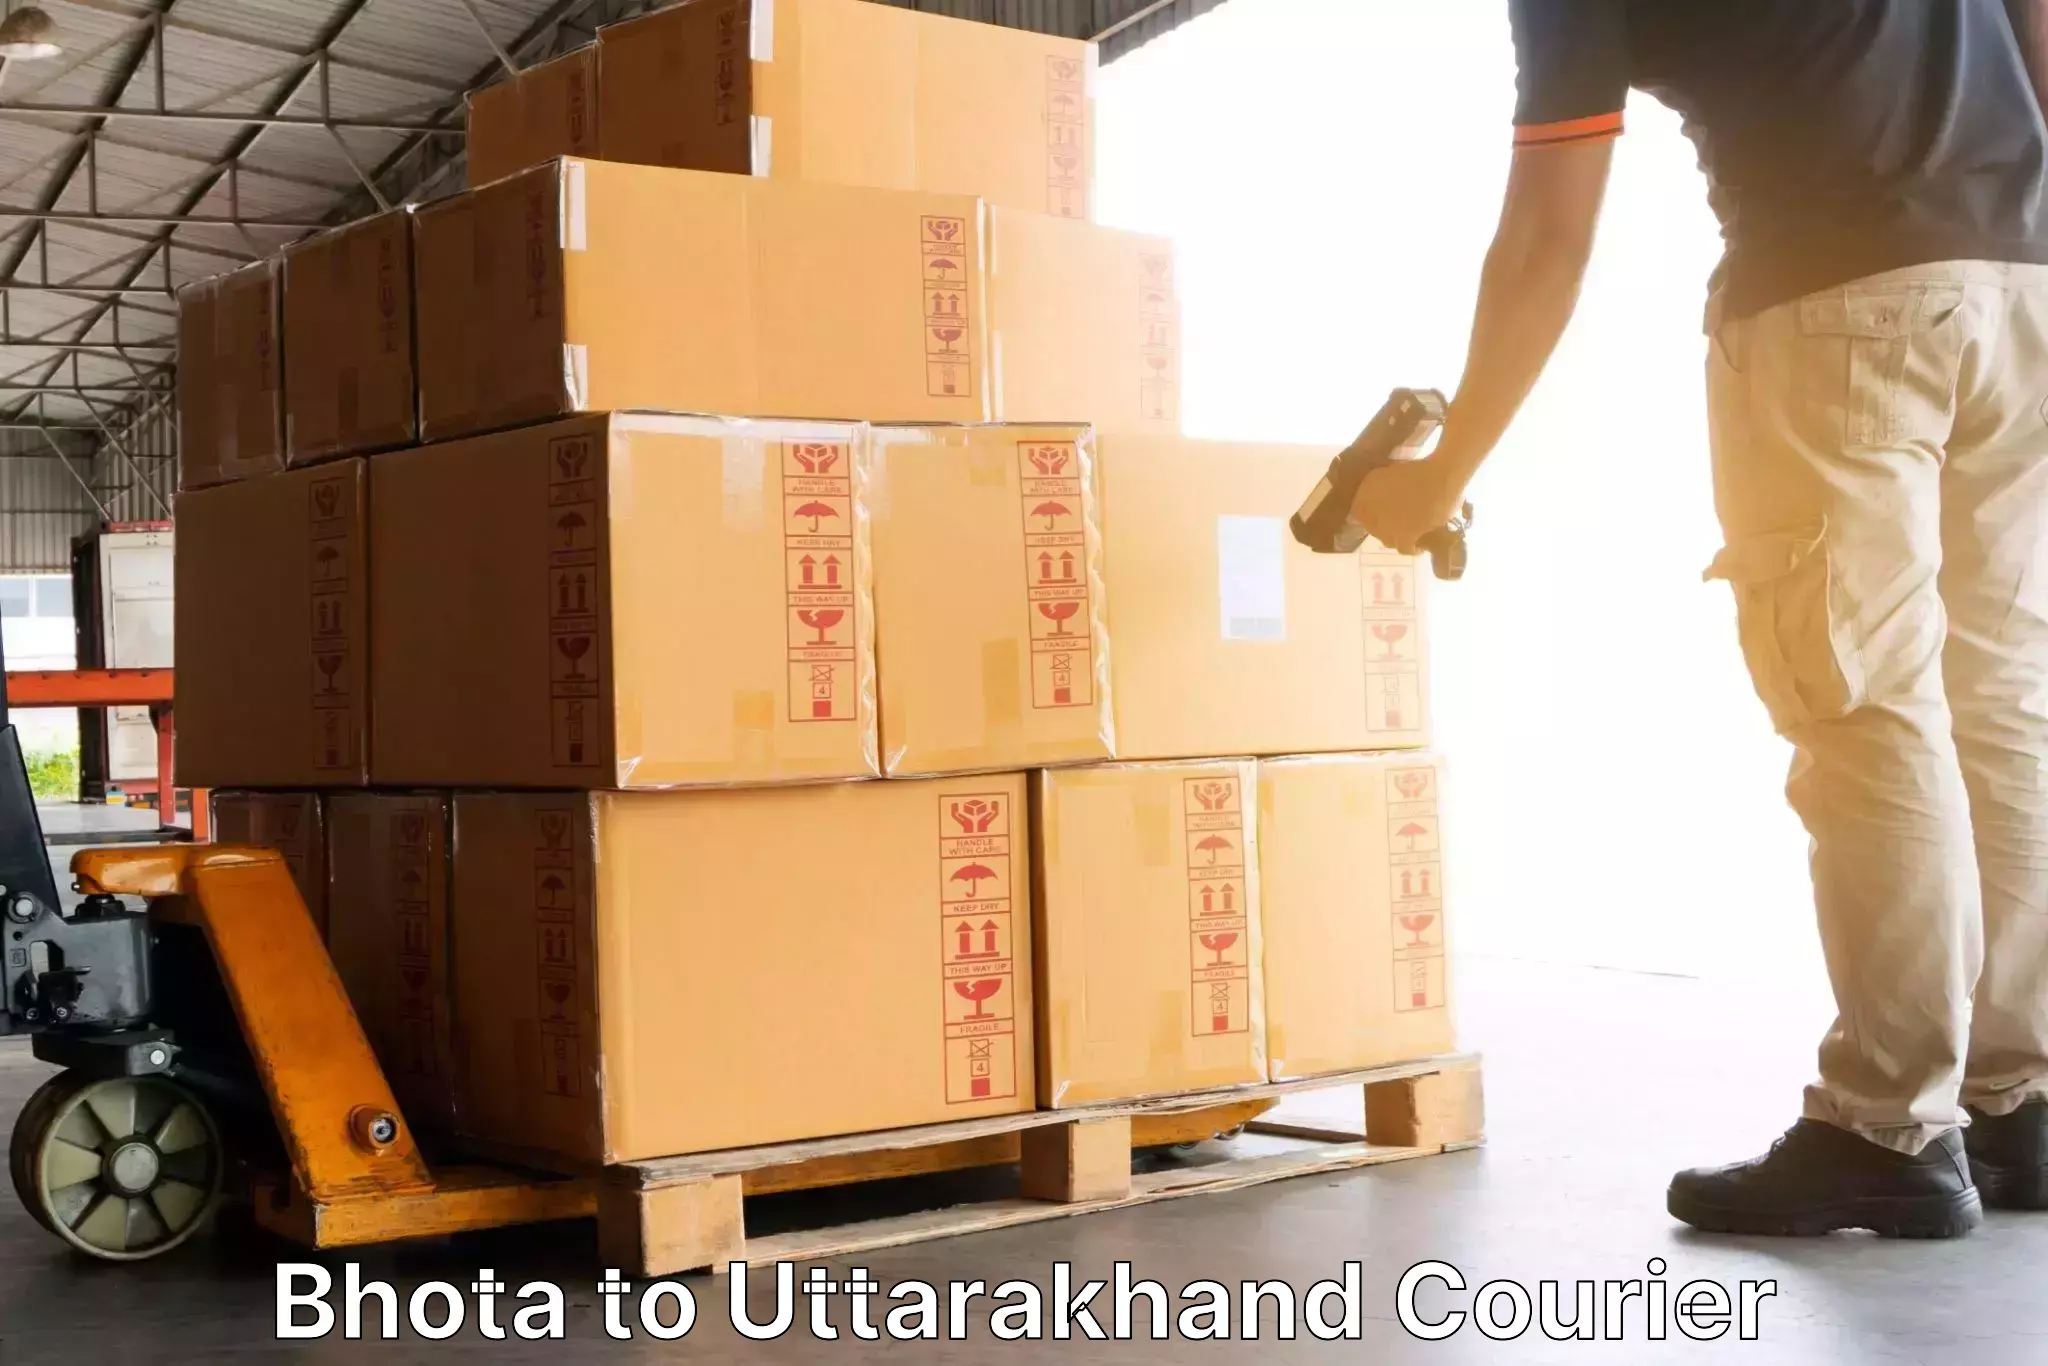 Customizable shipping options Bhota to Gairsain